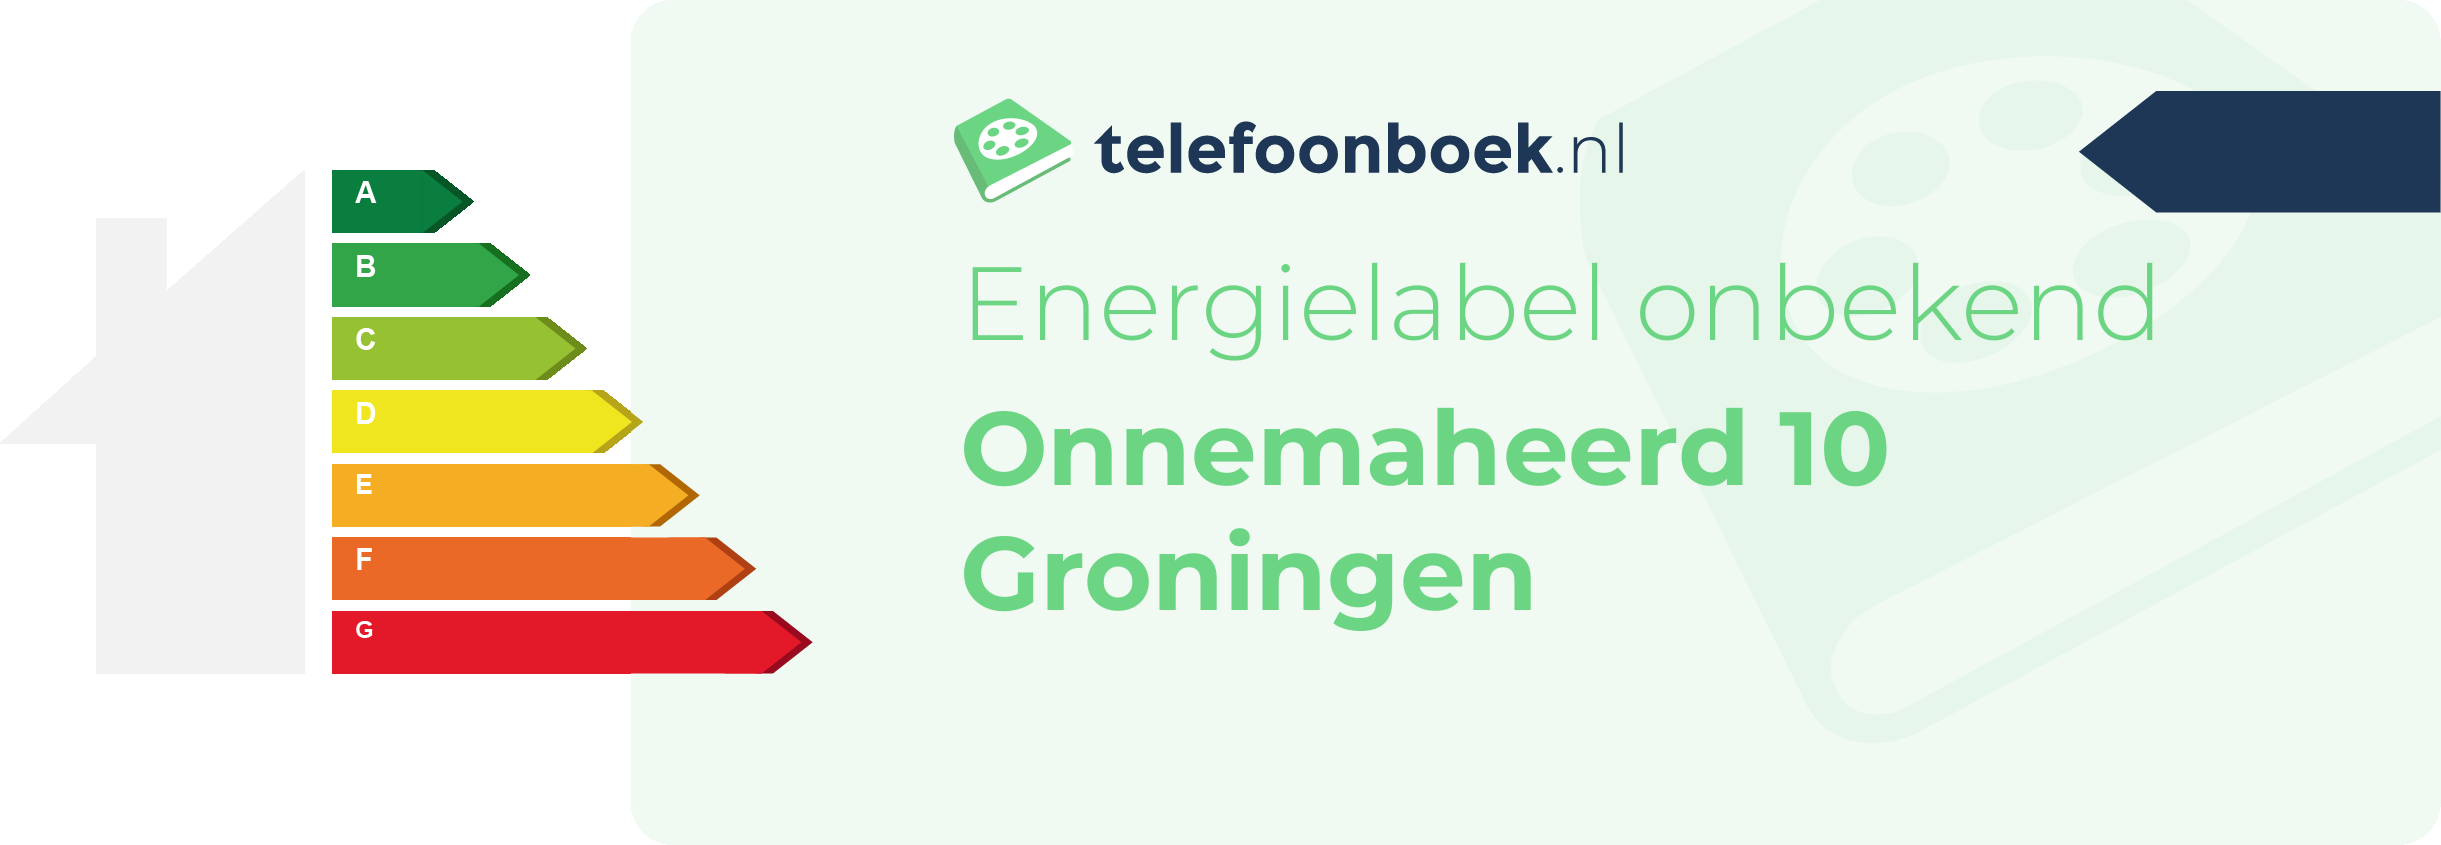 Energielabel Onnemaheerd 10 Groningen